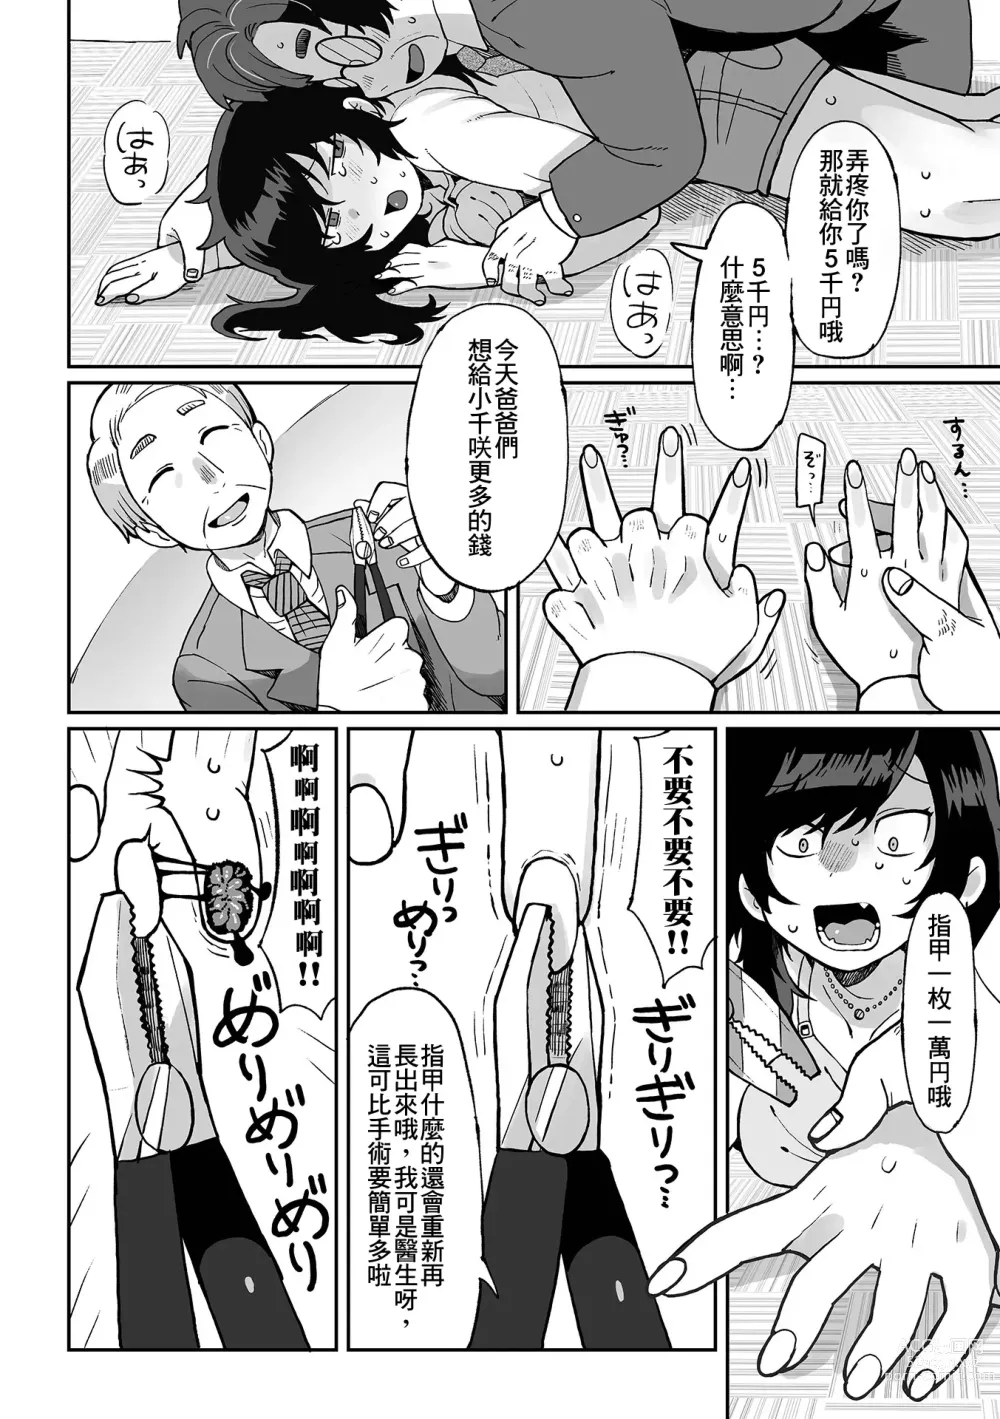 Page 11 of manga Nee Papa onegai